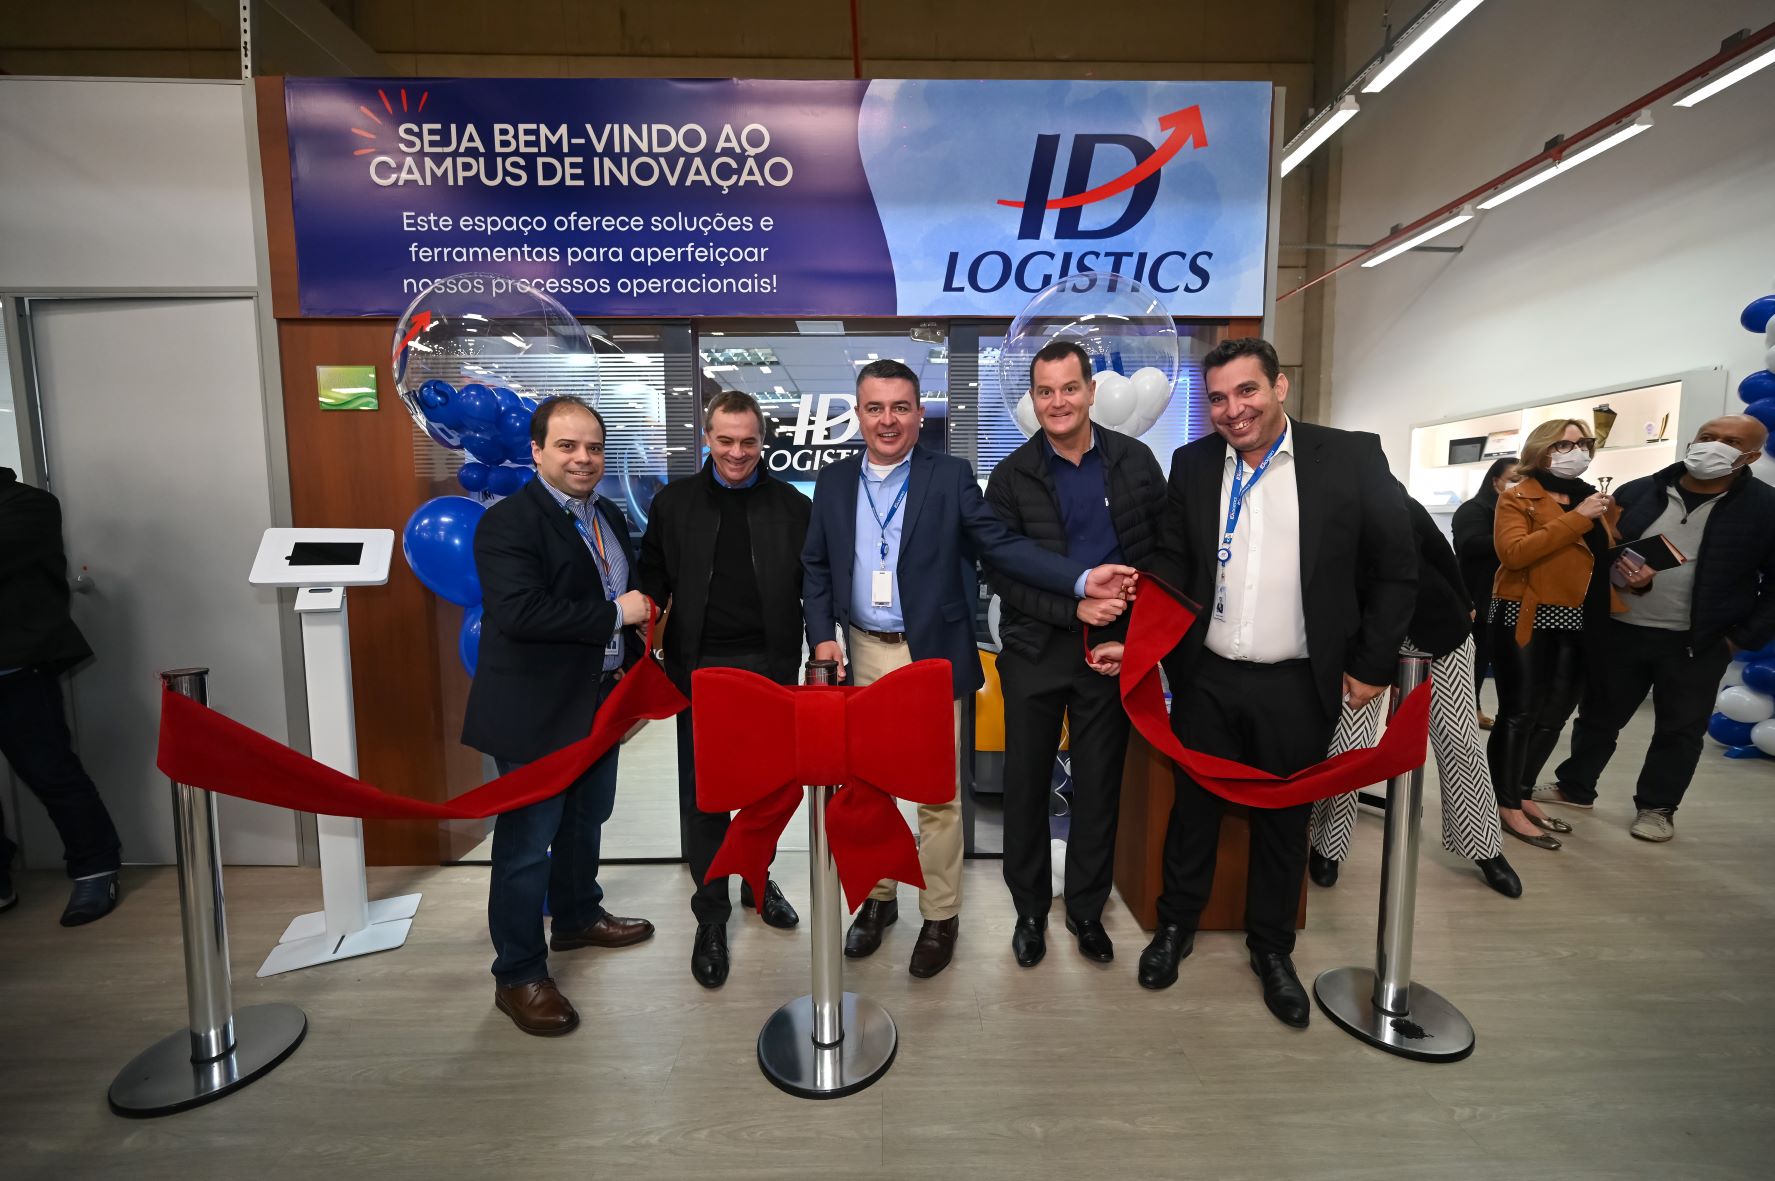  ID Logistics Brasil inaugura campus de inovação